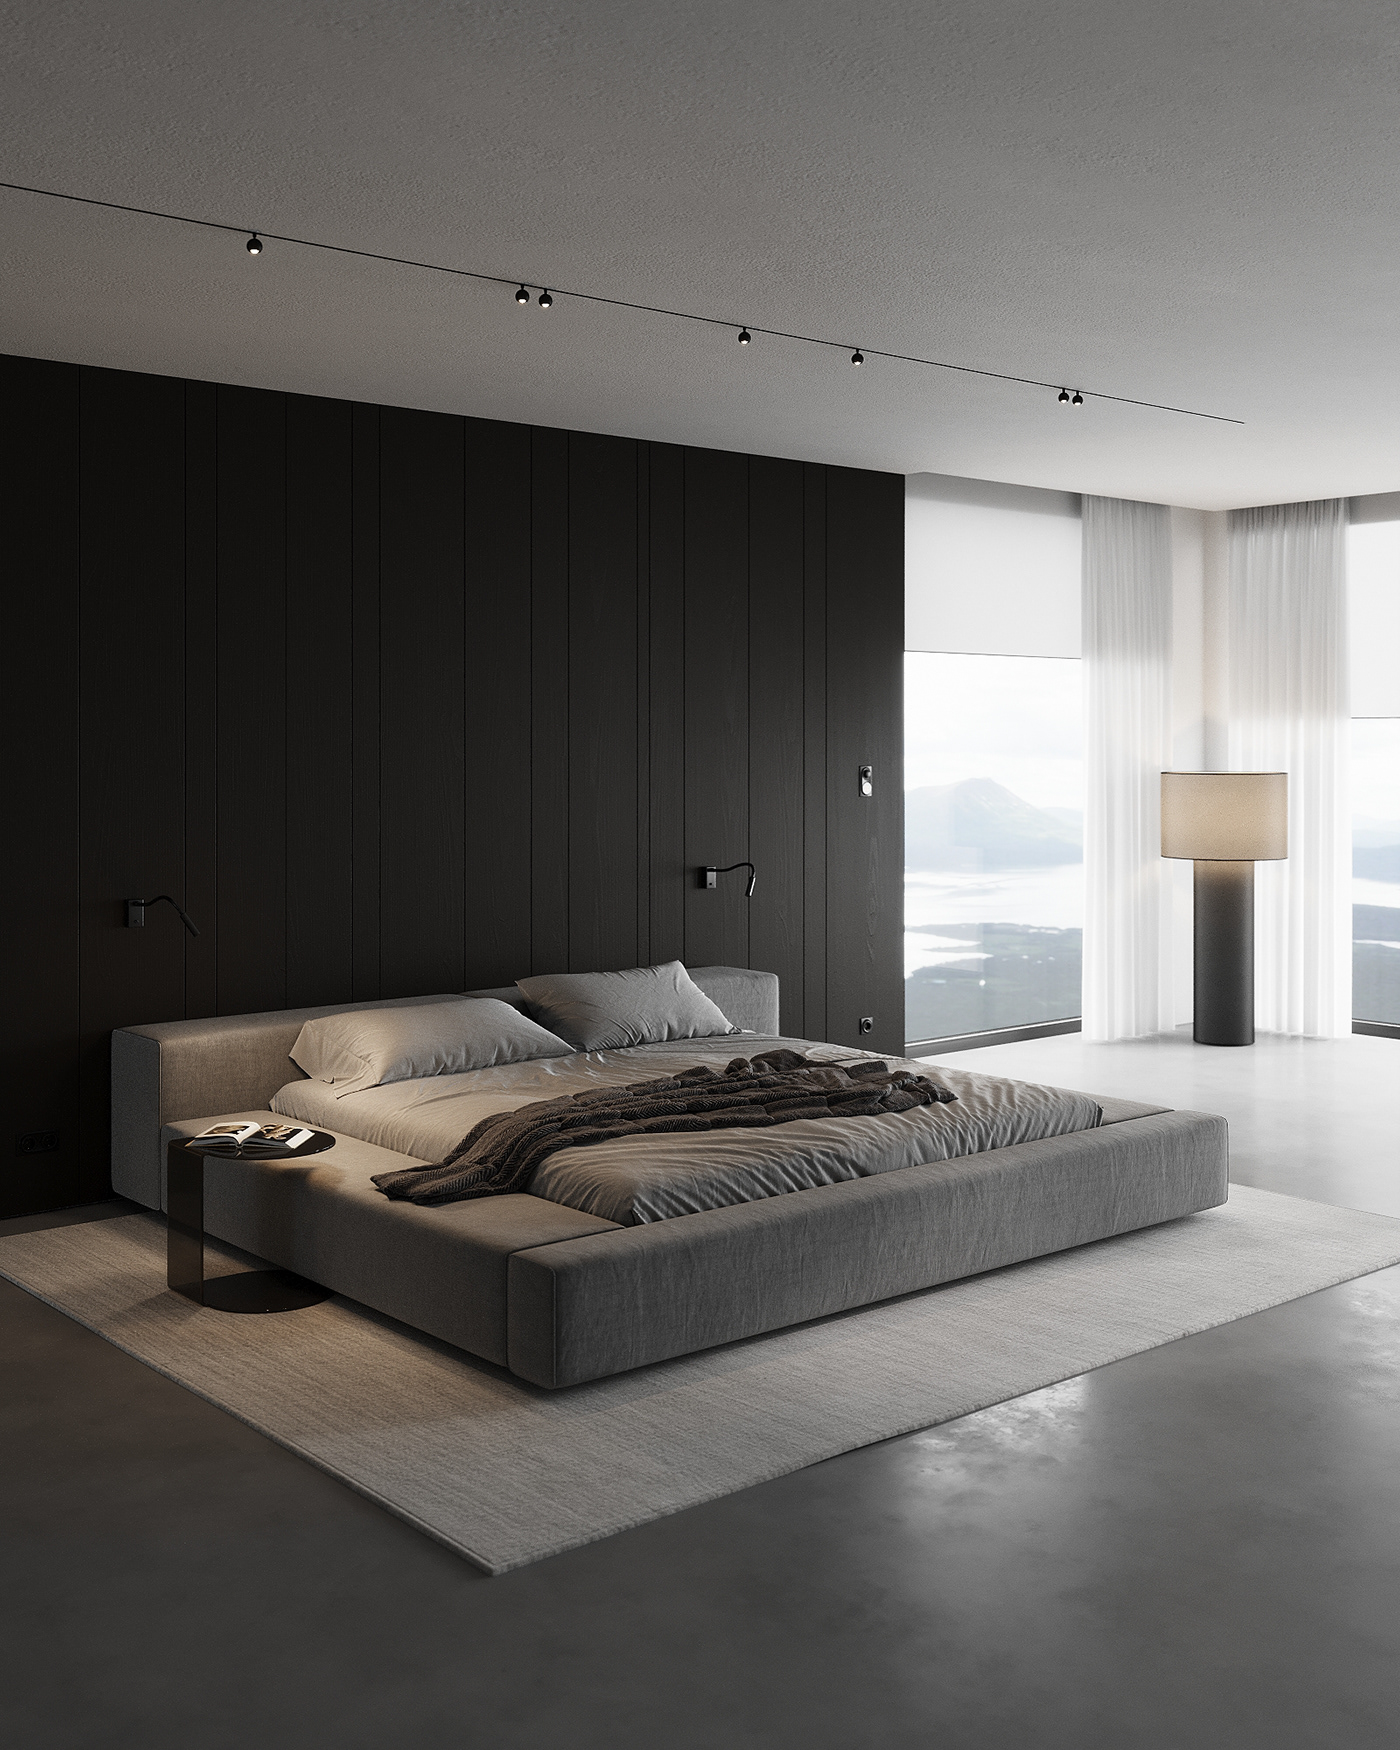 bedroom bedroom design Bedroom interior дизайн интерьера спальня 3D Visualization CGI Визуализация интерьера дизайн спальни